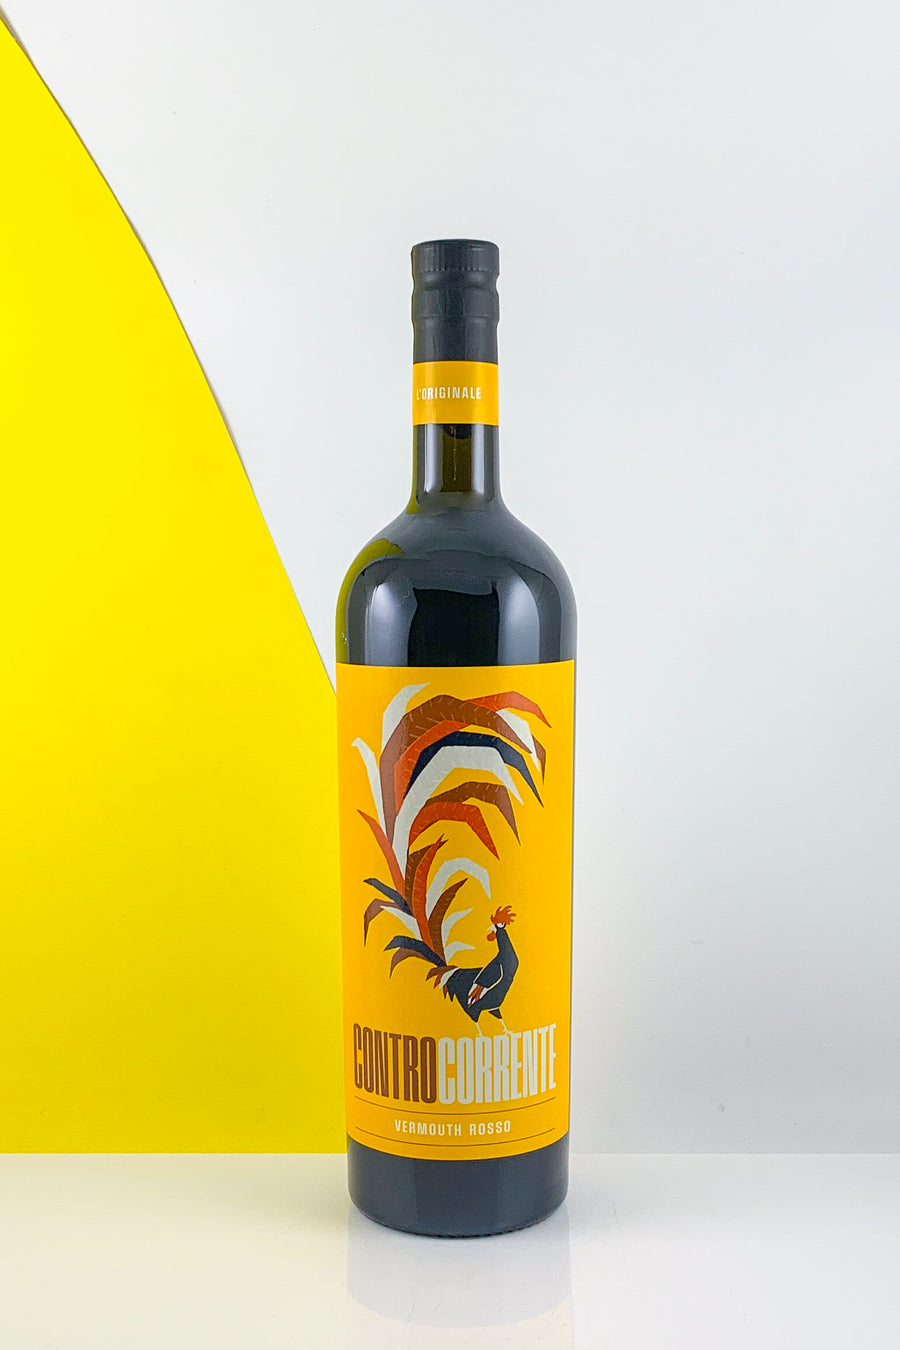 Controcorrente Vermouth Rosso